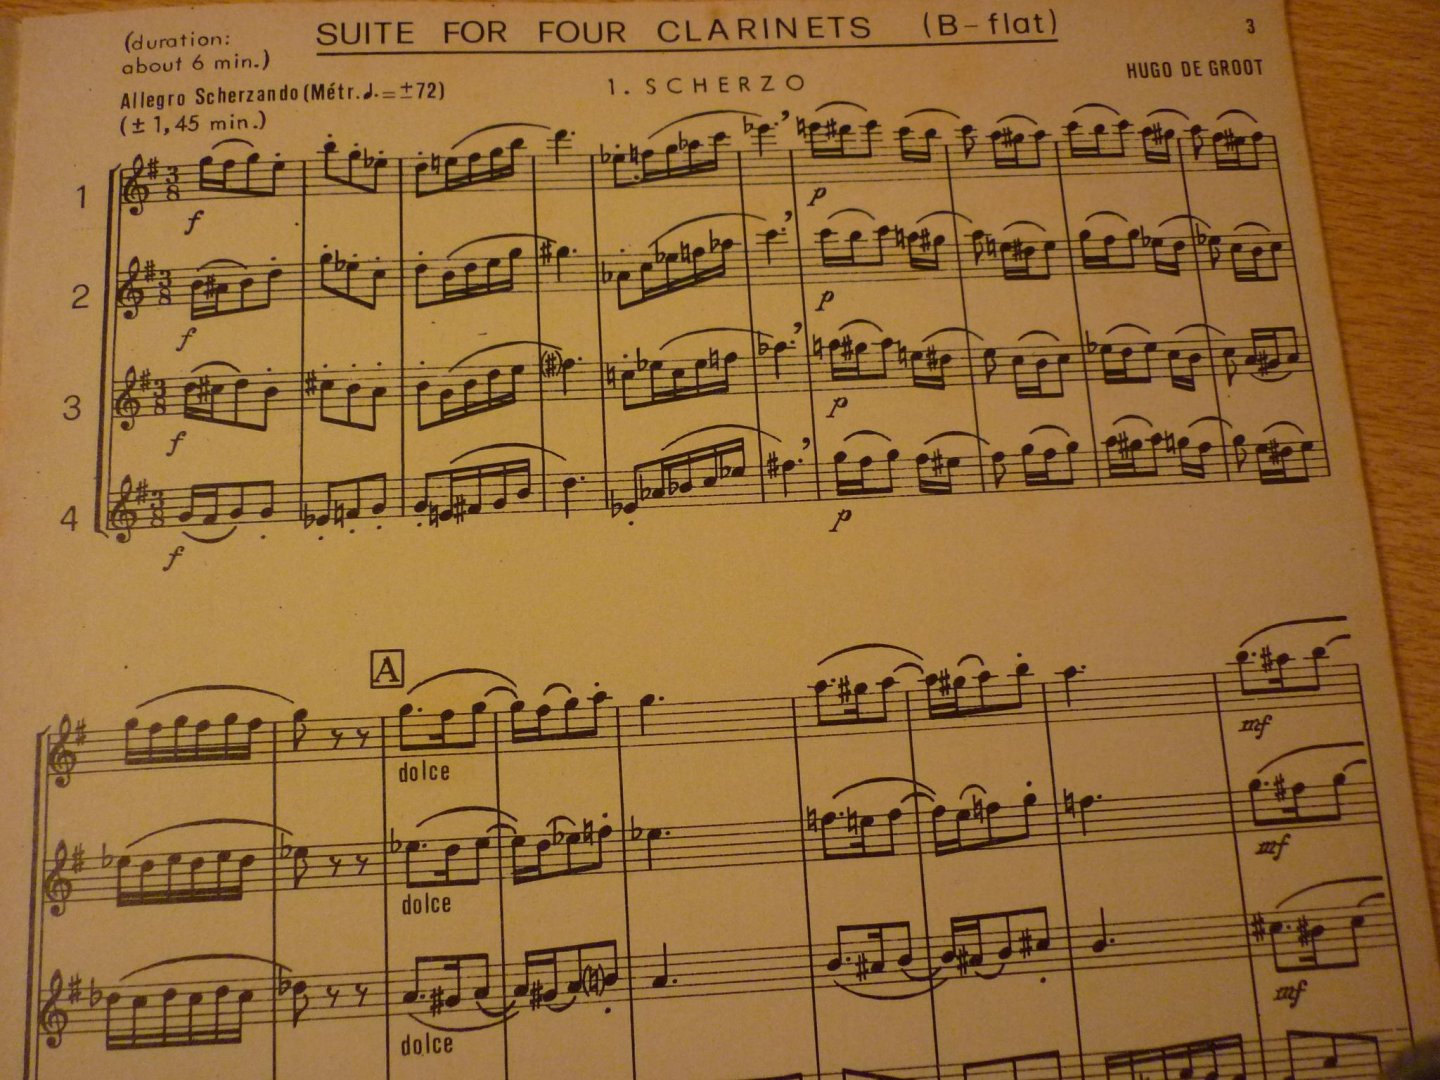 Groot; Hugo de - Suite for 4 Clarinets (B-flat)